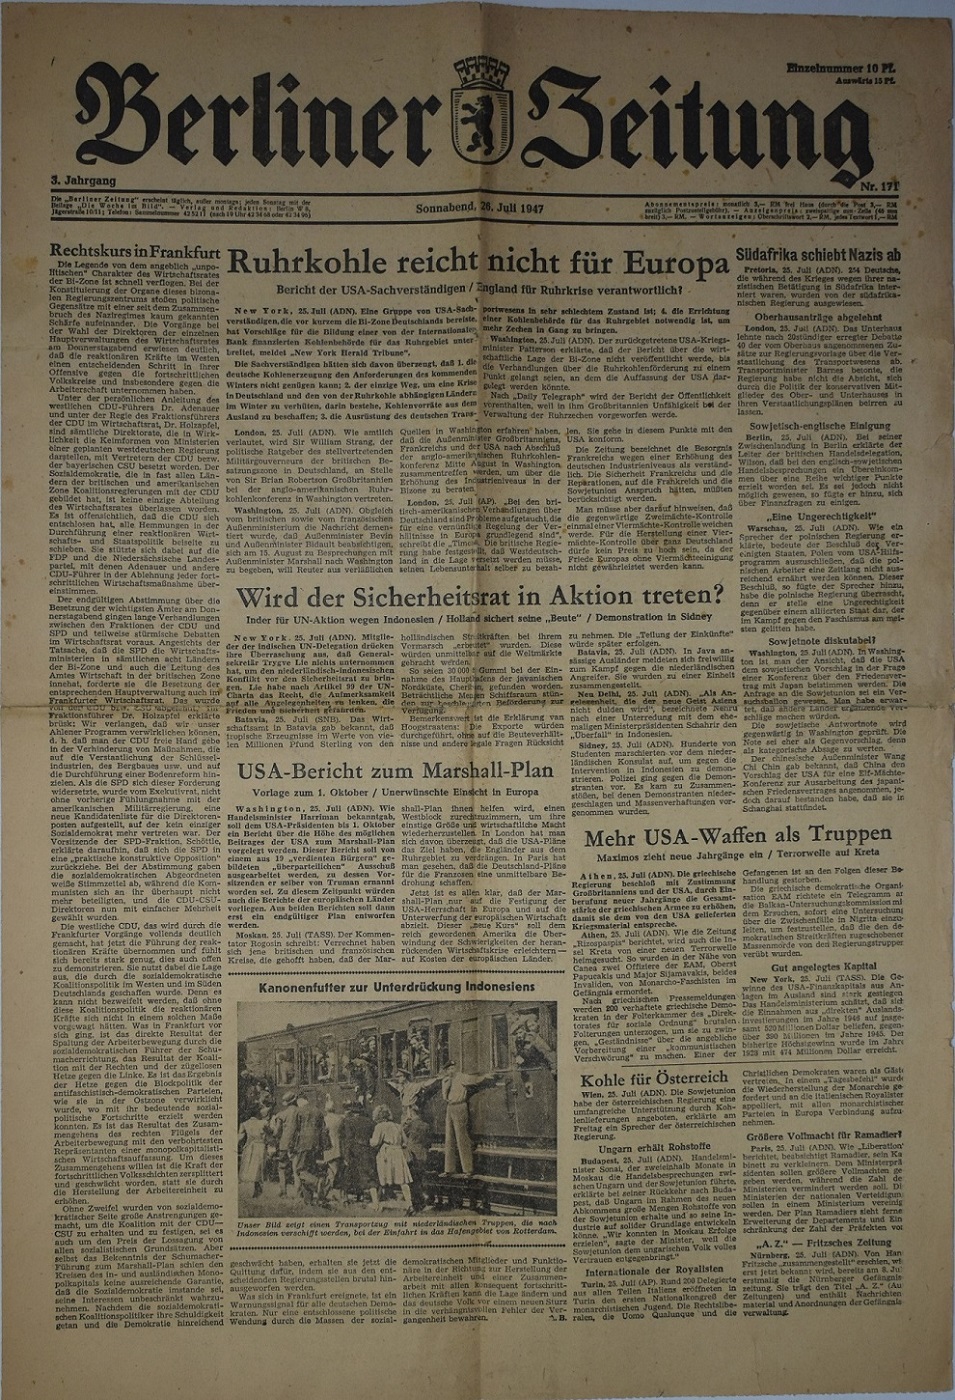 Газети. Газета "Berliner Zeitung" (з нім. Berliner Zeitung - "Берлинська газета")  1947